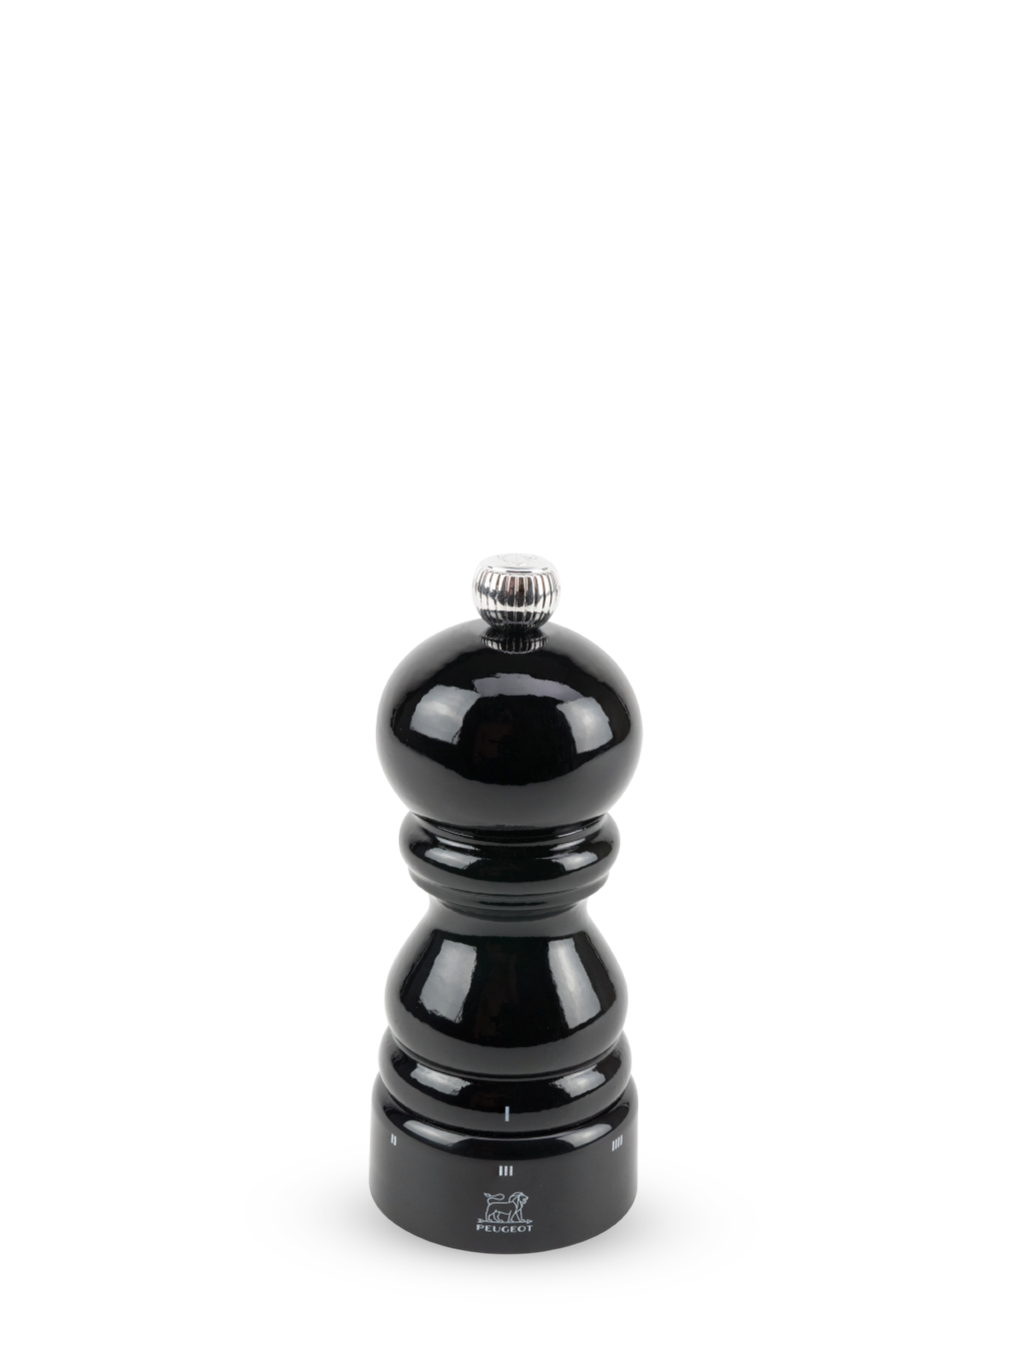 Paris Manuelle Salzmühle aus Holz, u'Select-System, schwarz lackiert, 12 cm